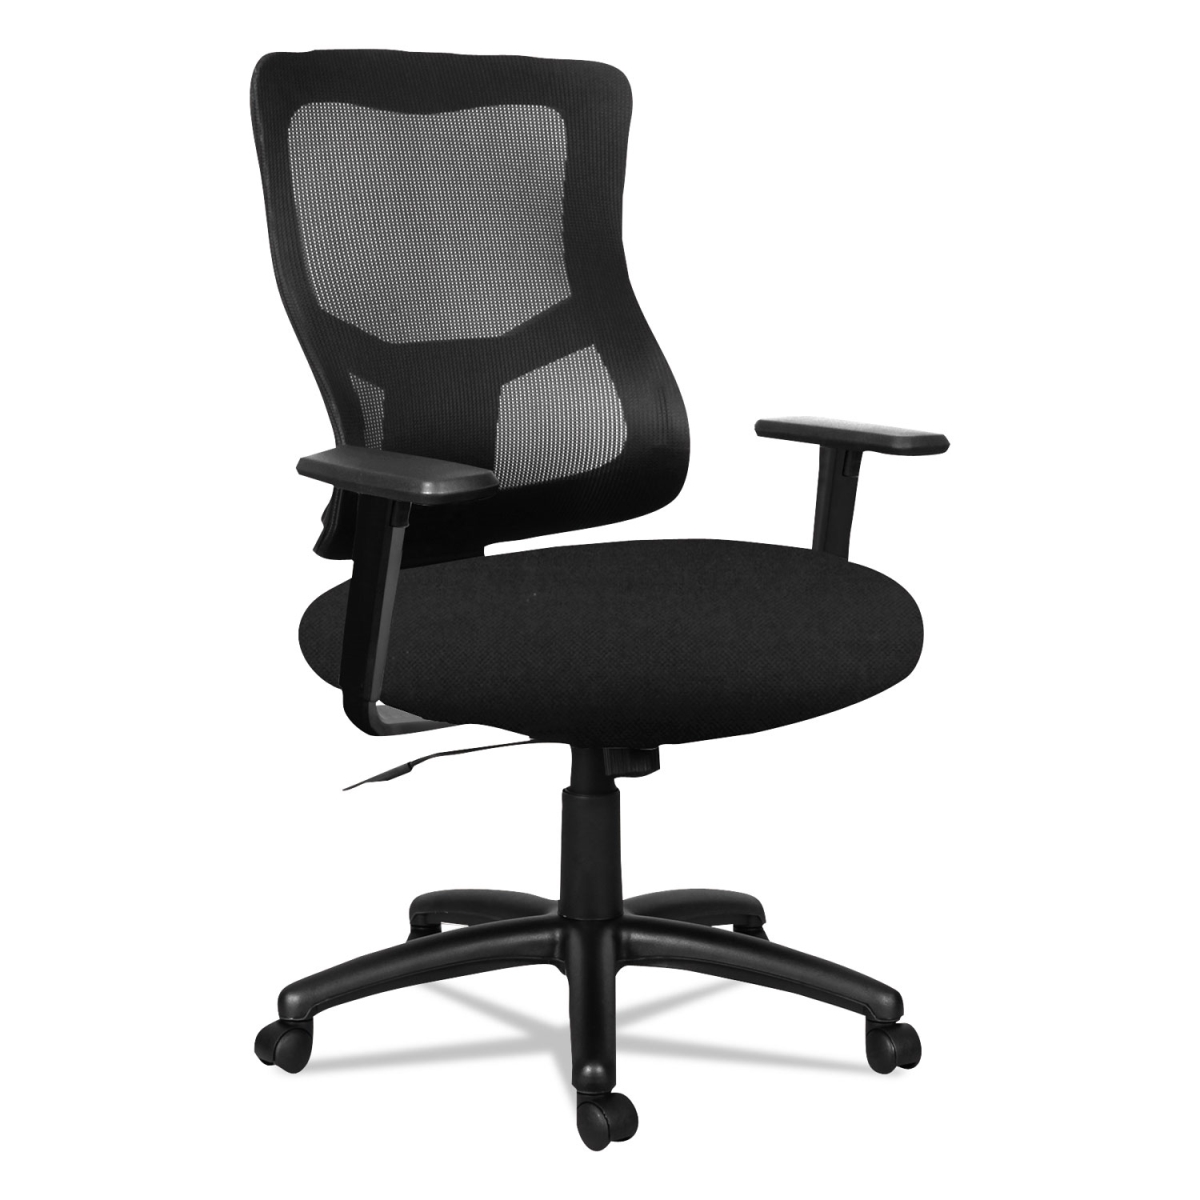 Alera Aleelt4214f Adjustable Mid-back Mesh Swivel & Tilt Chair With Adjustable Arms, Black